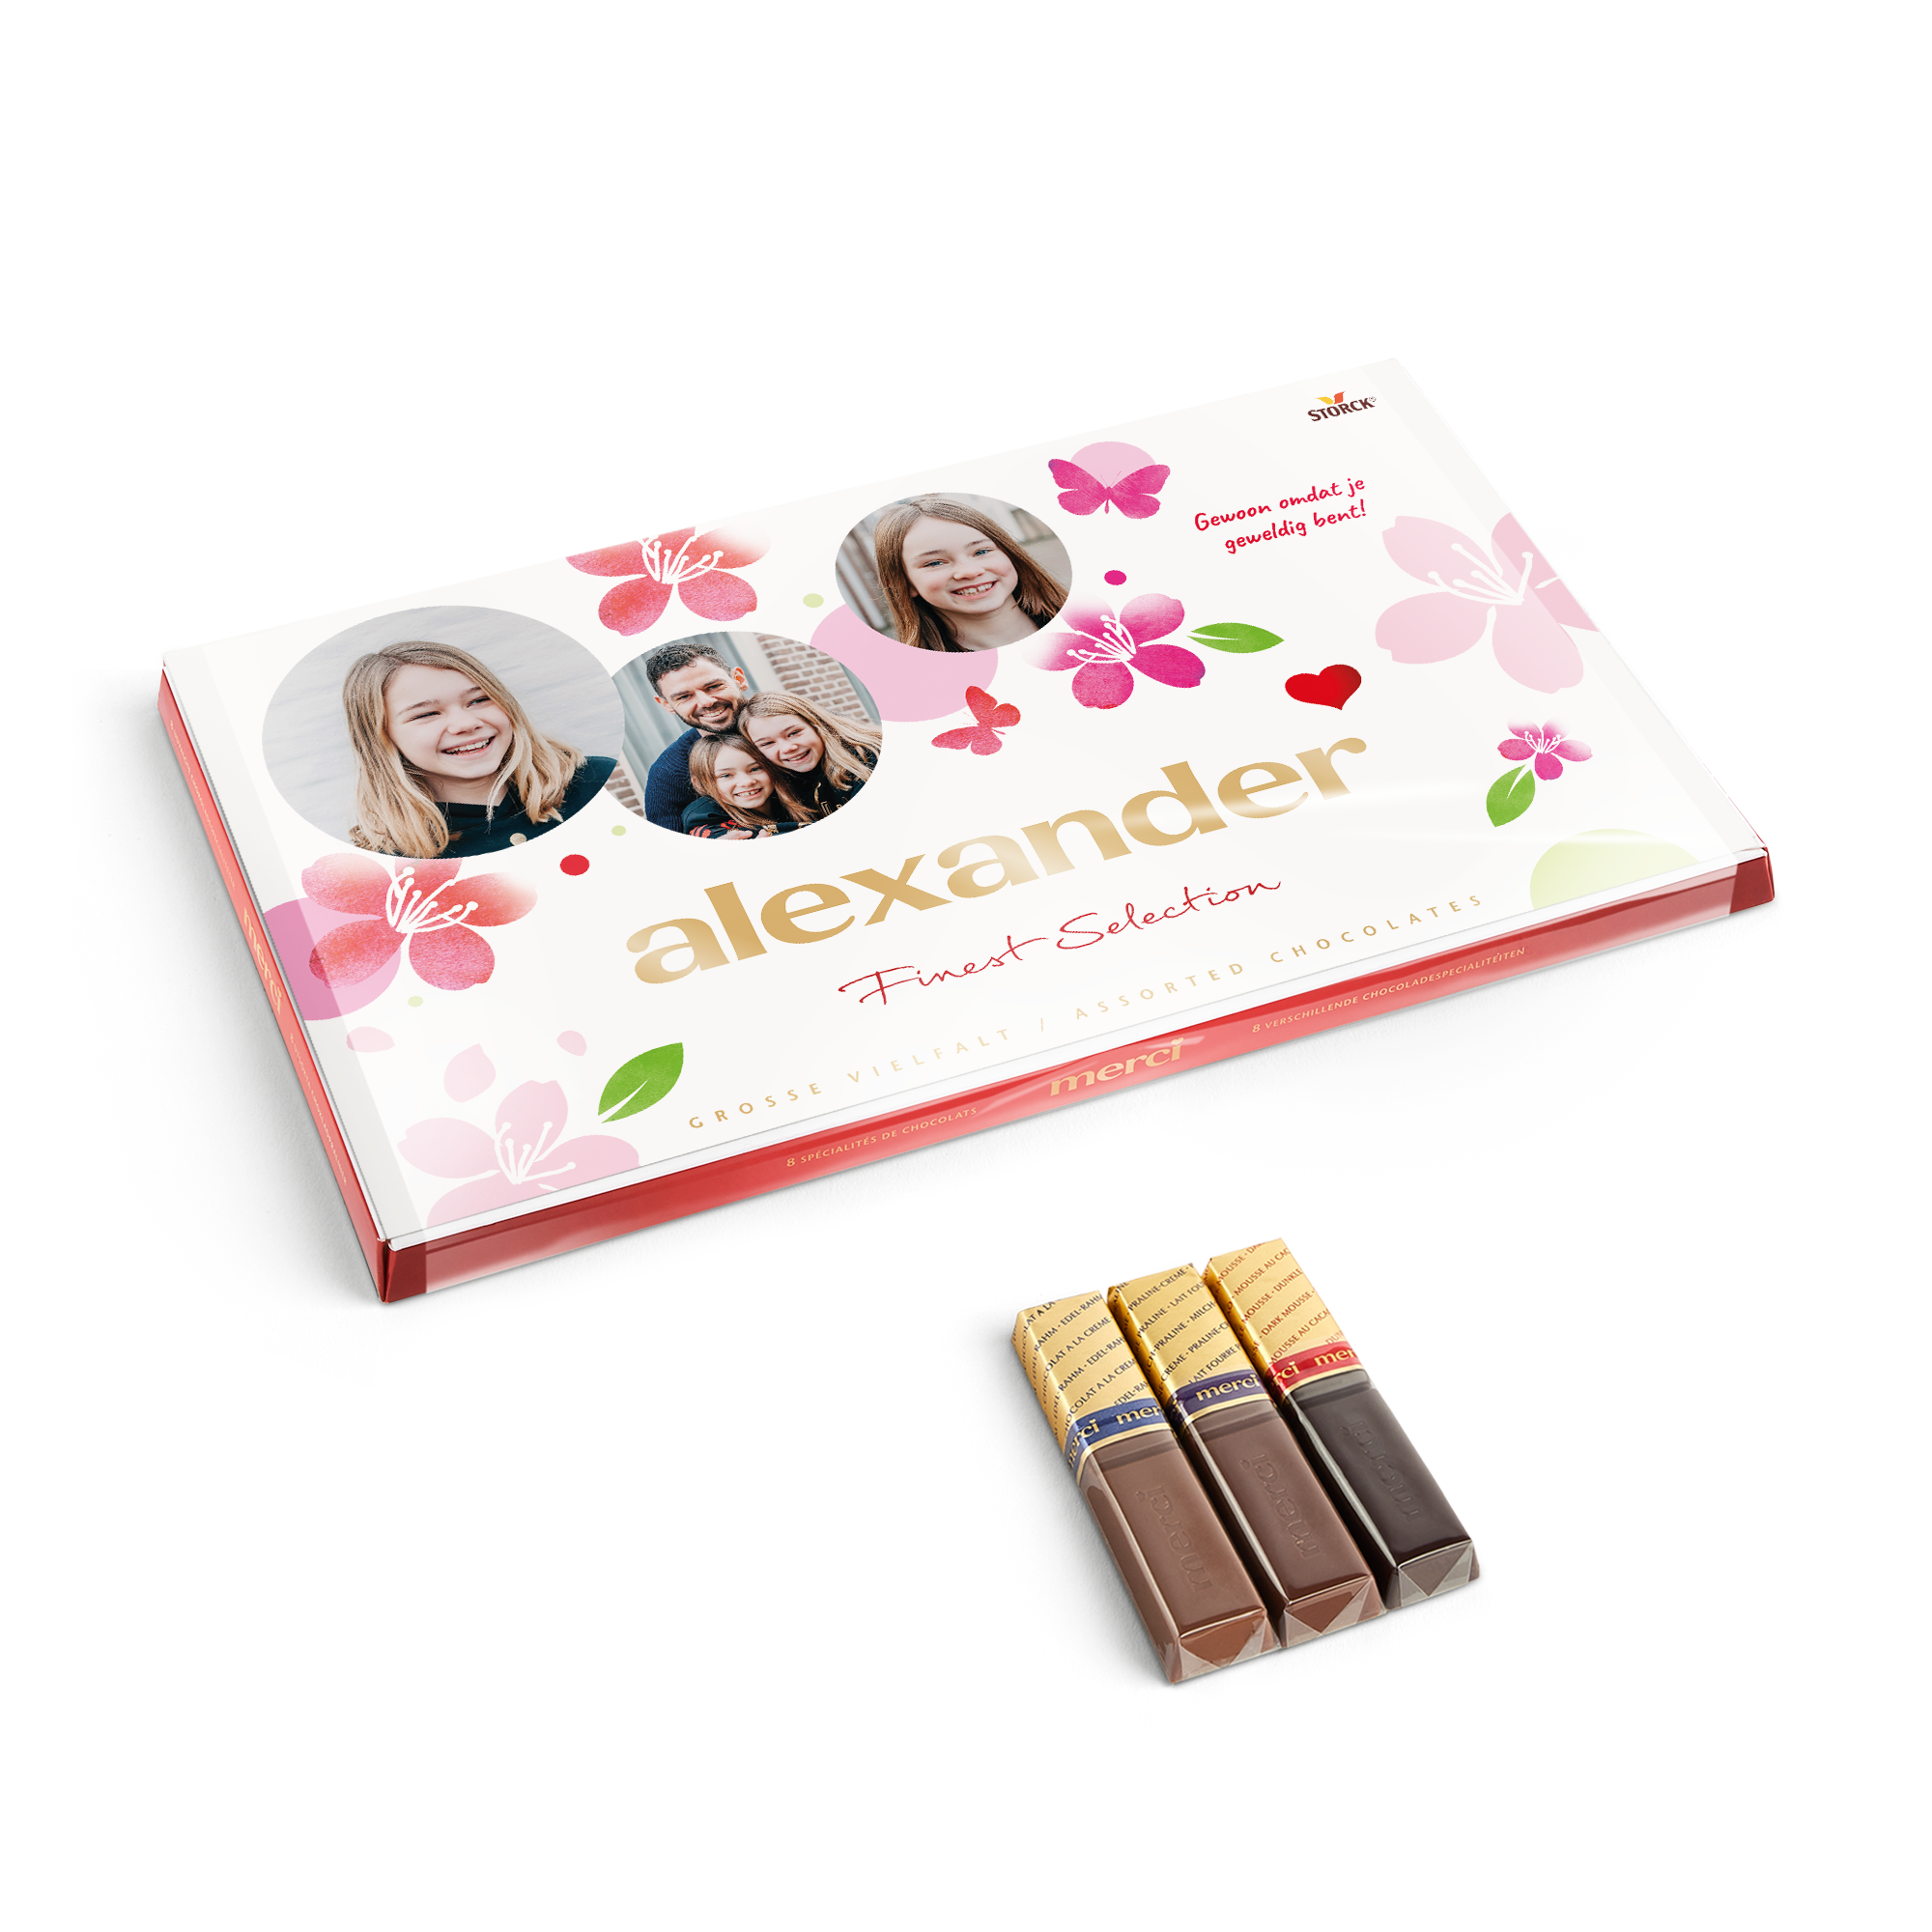 Merci Finest Selection chocolade mix met gepersonaliseerde kaart - 400 gram